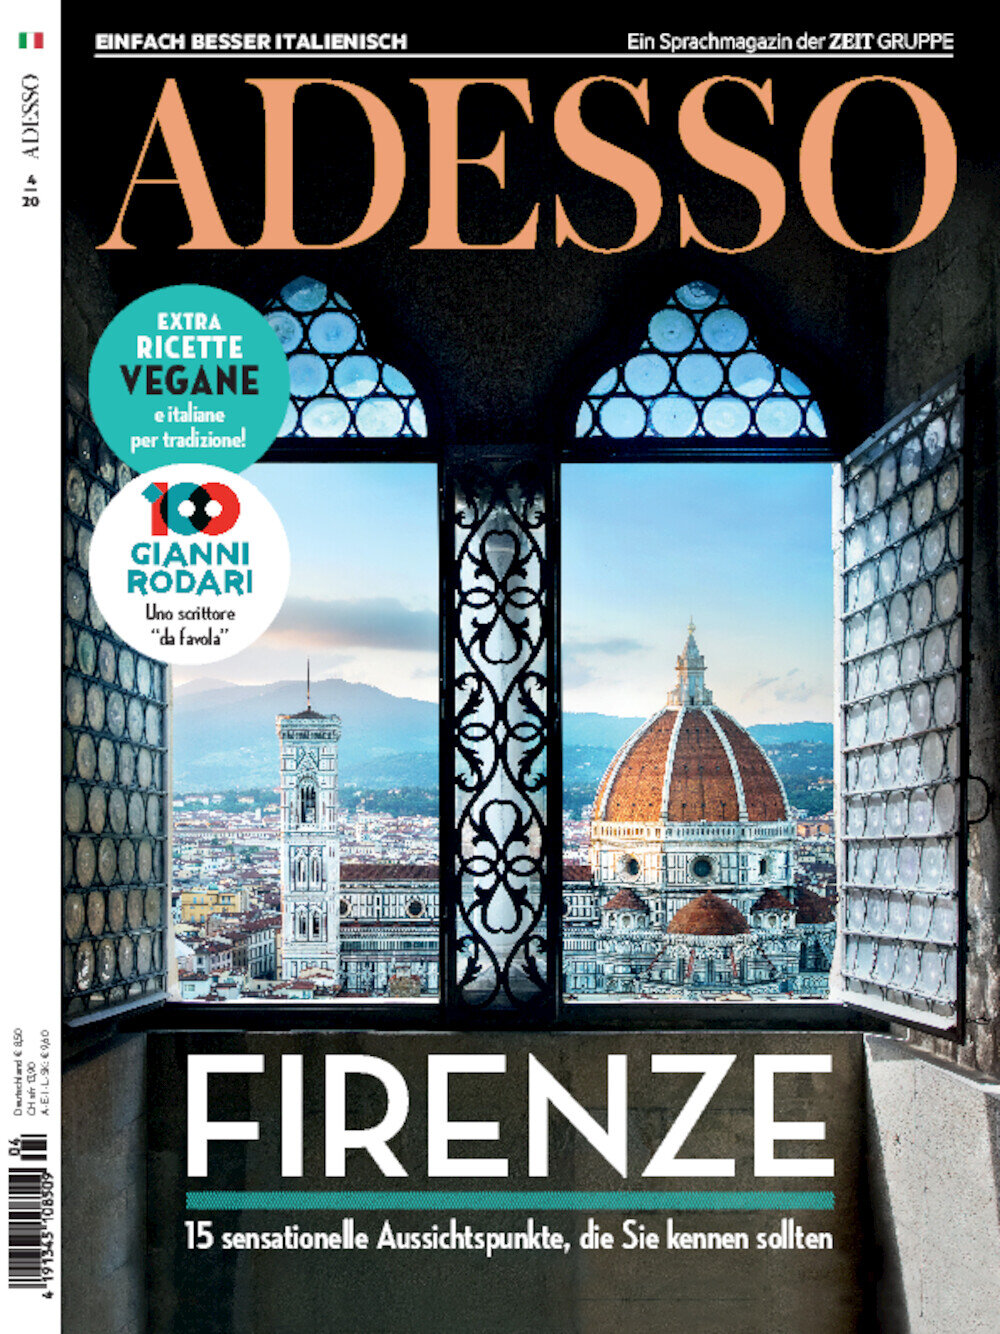 ADESSO eMagazine 04/2020